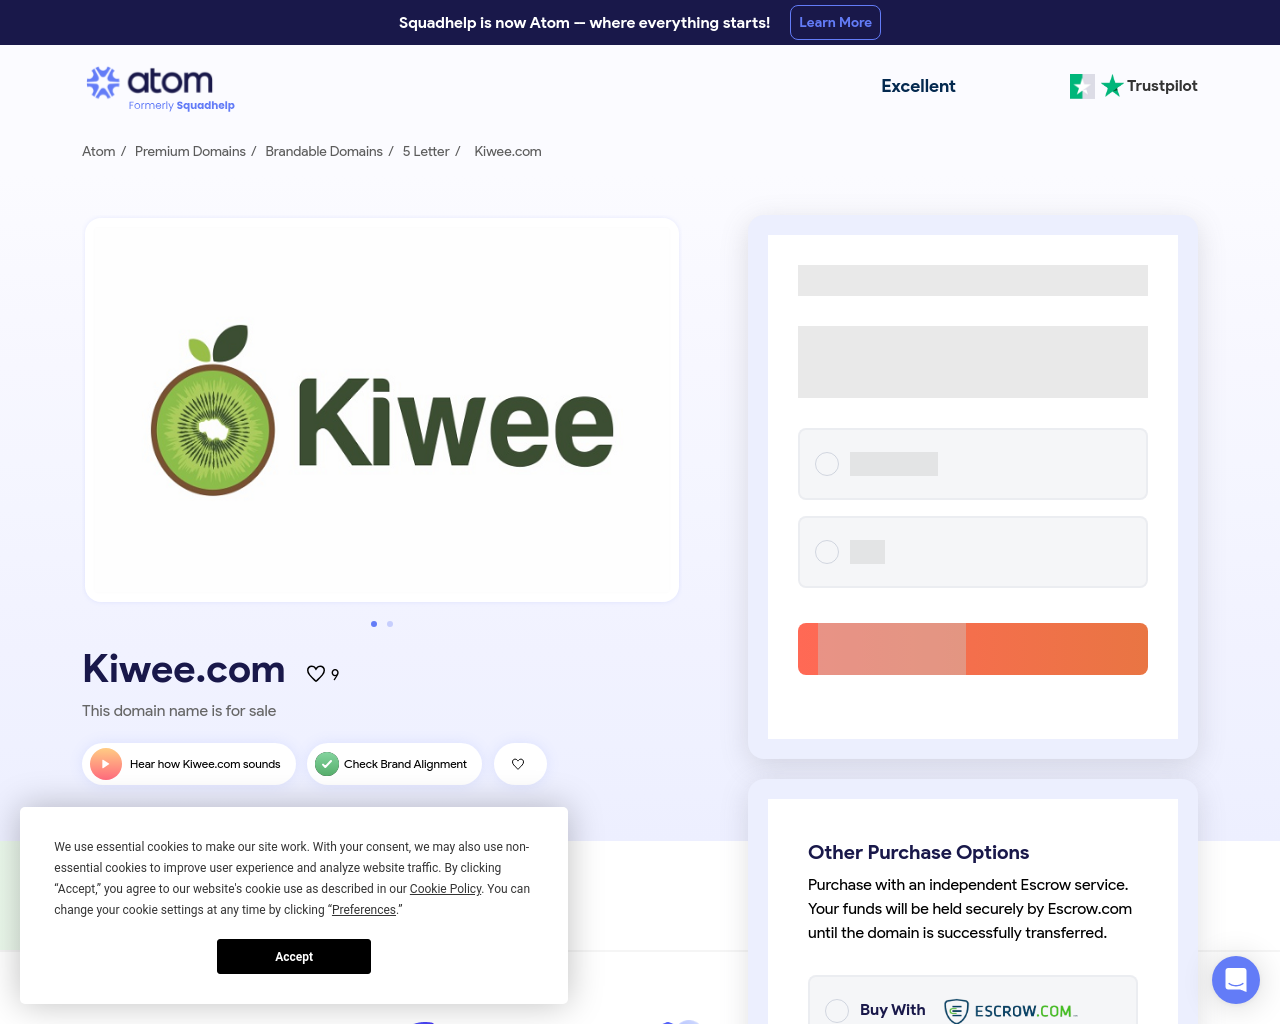 kiwee.com